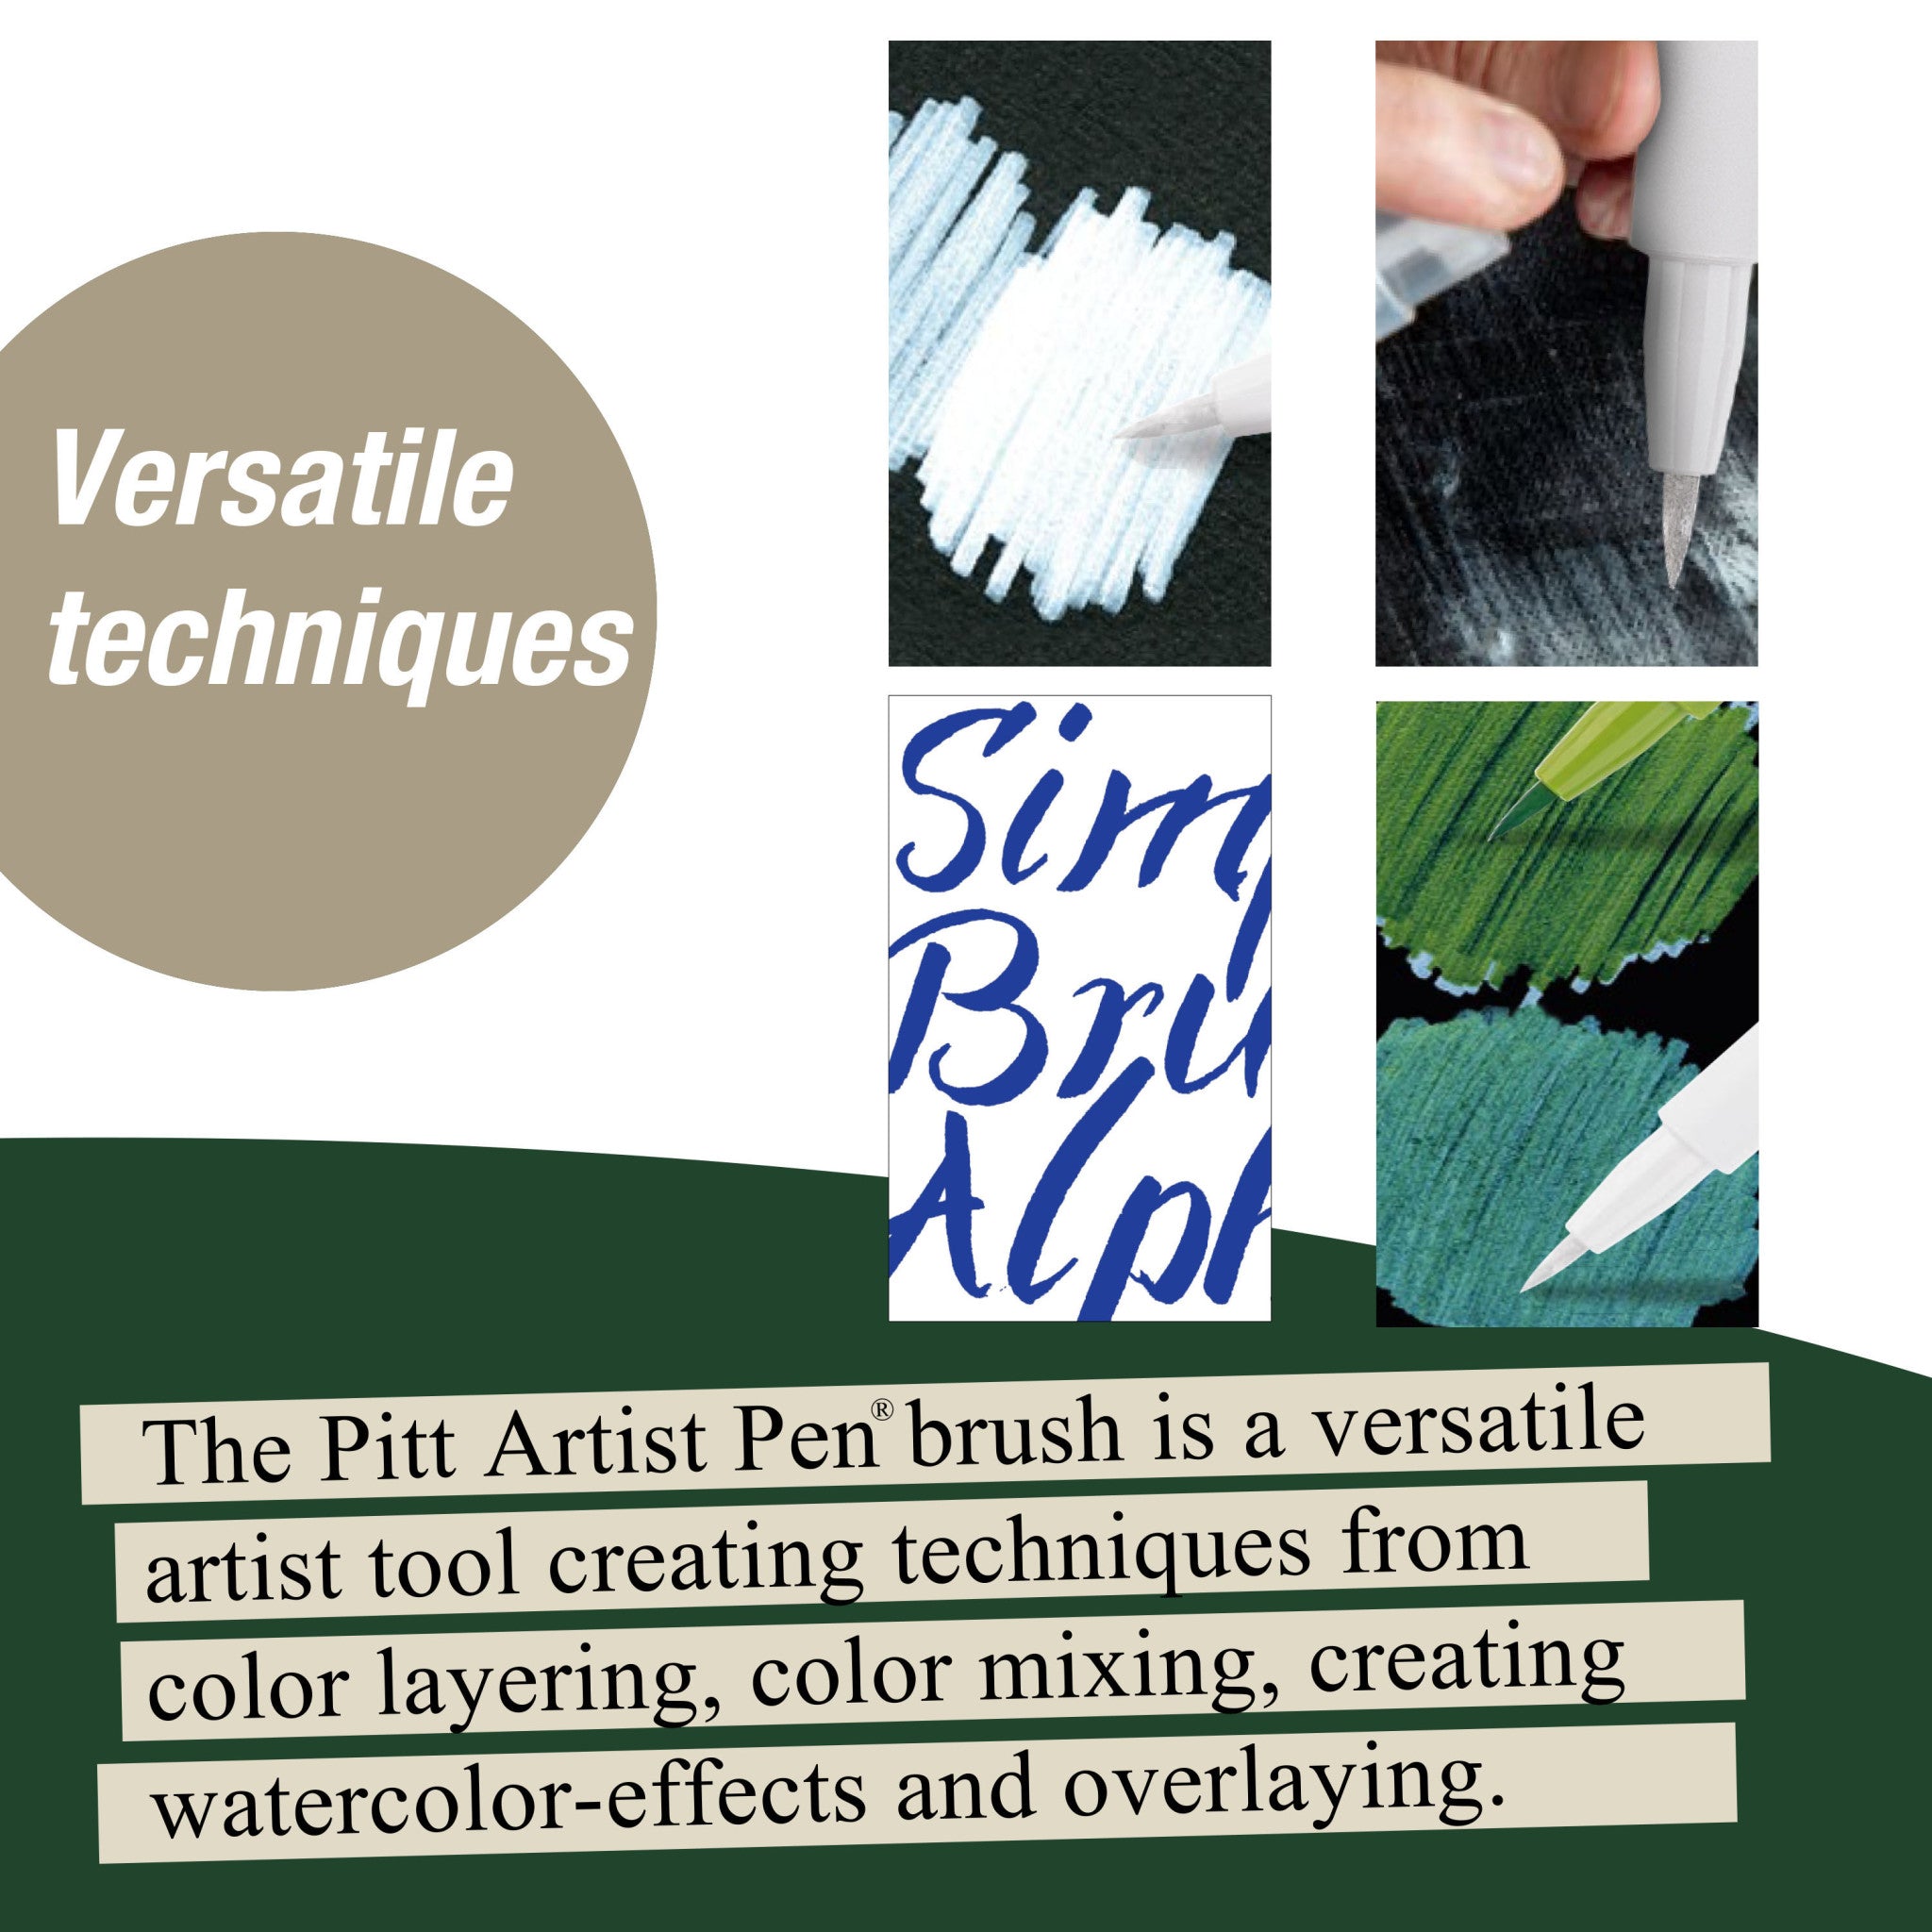 Faber-Castell White Lettering Pitt Artist Pens Set of 4 - 20445749